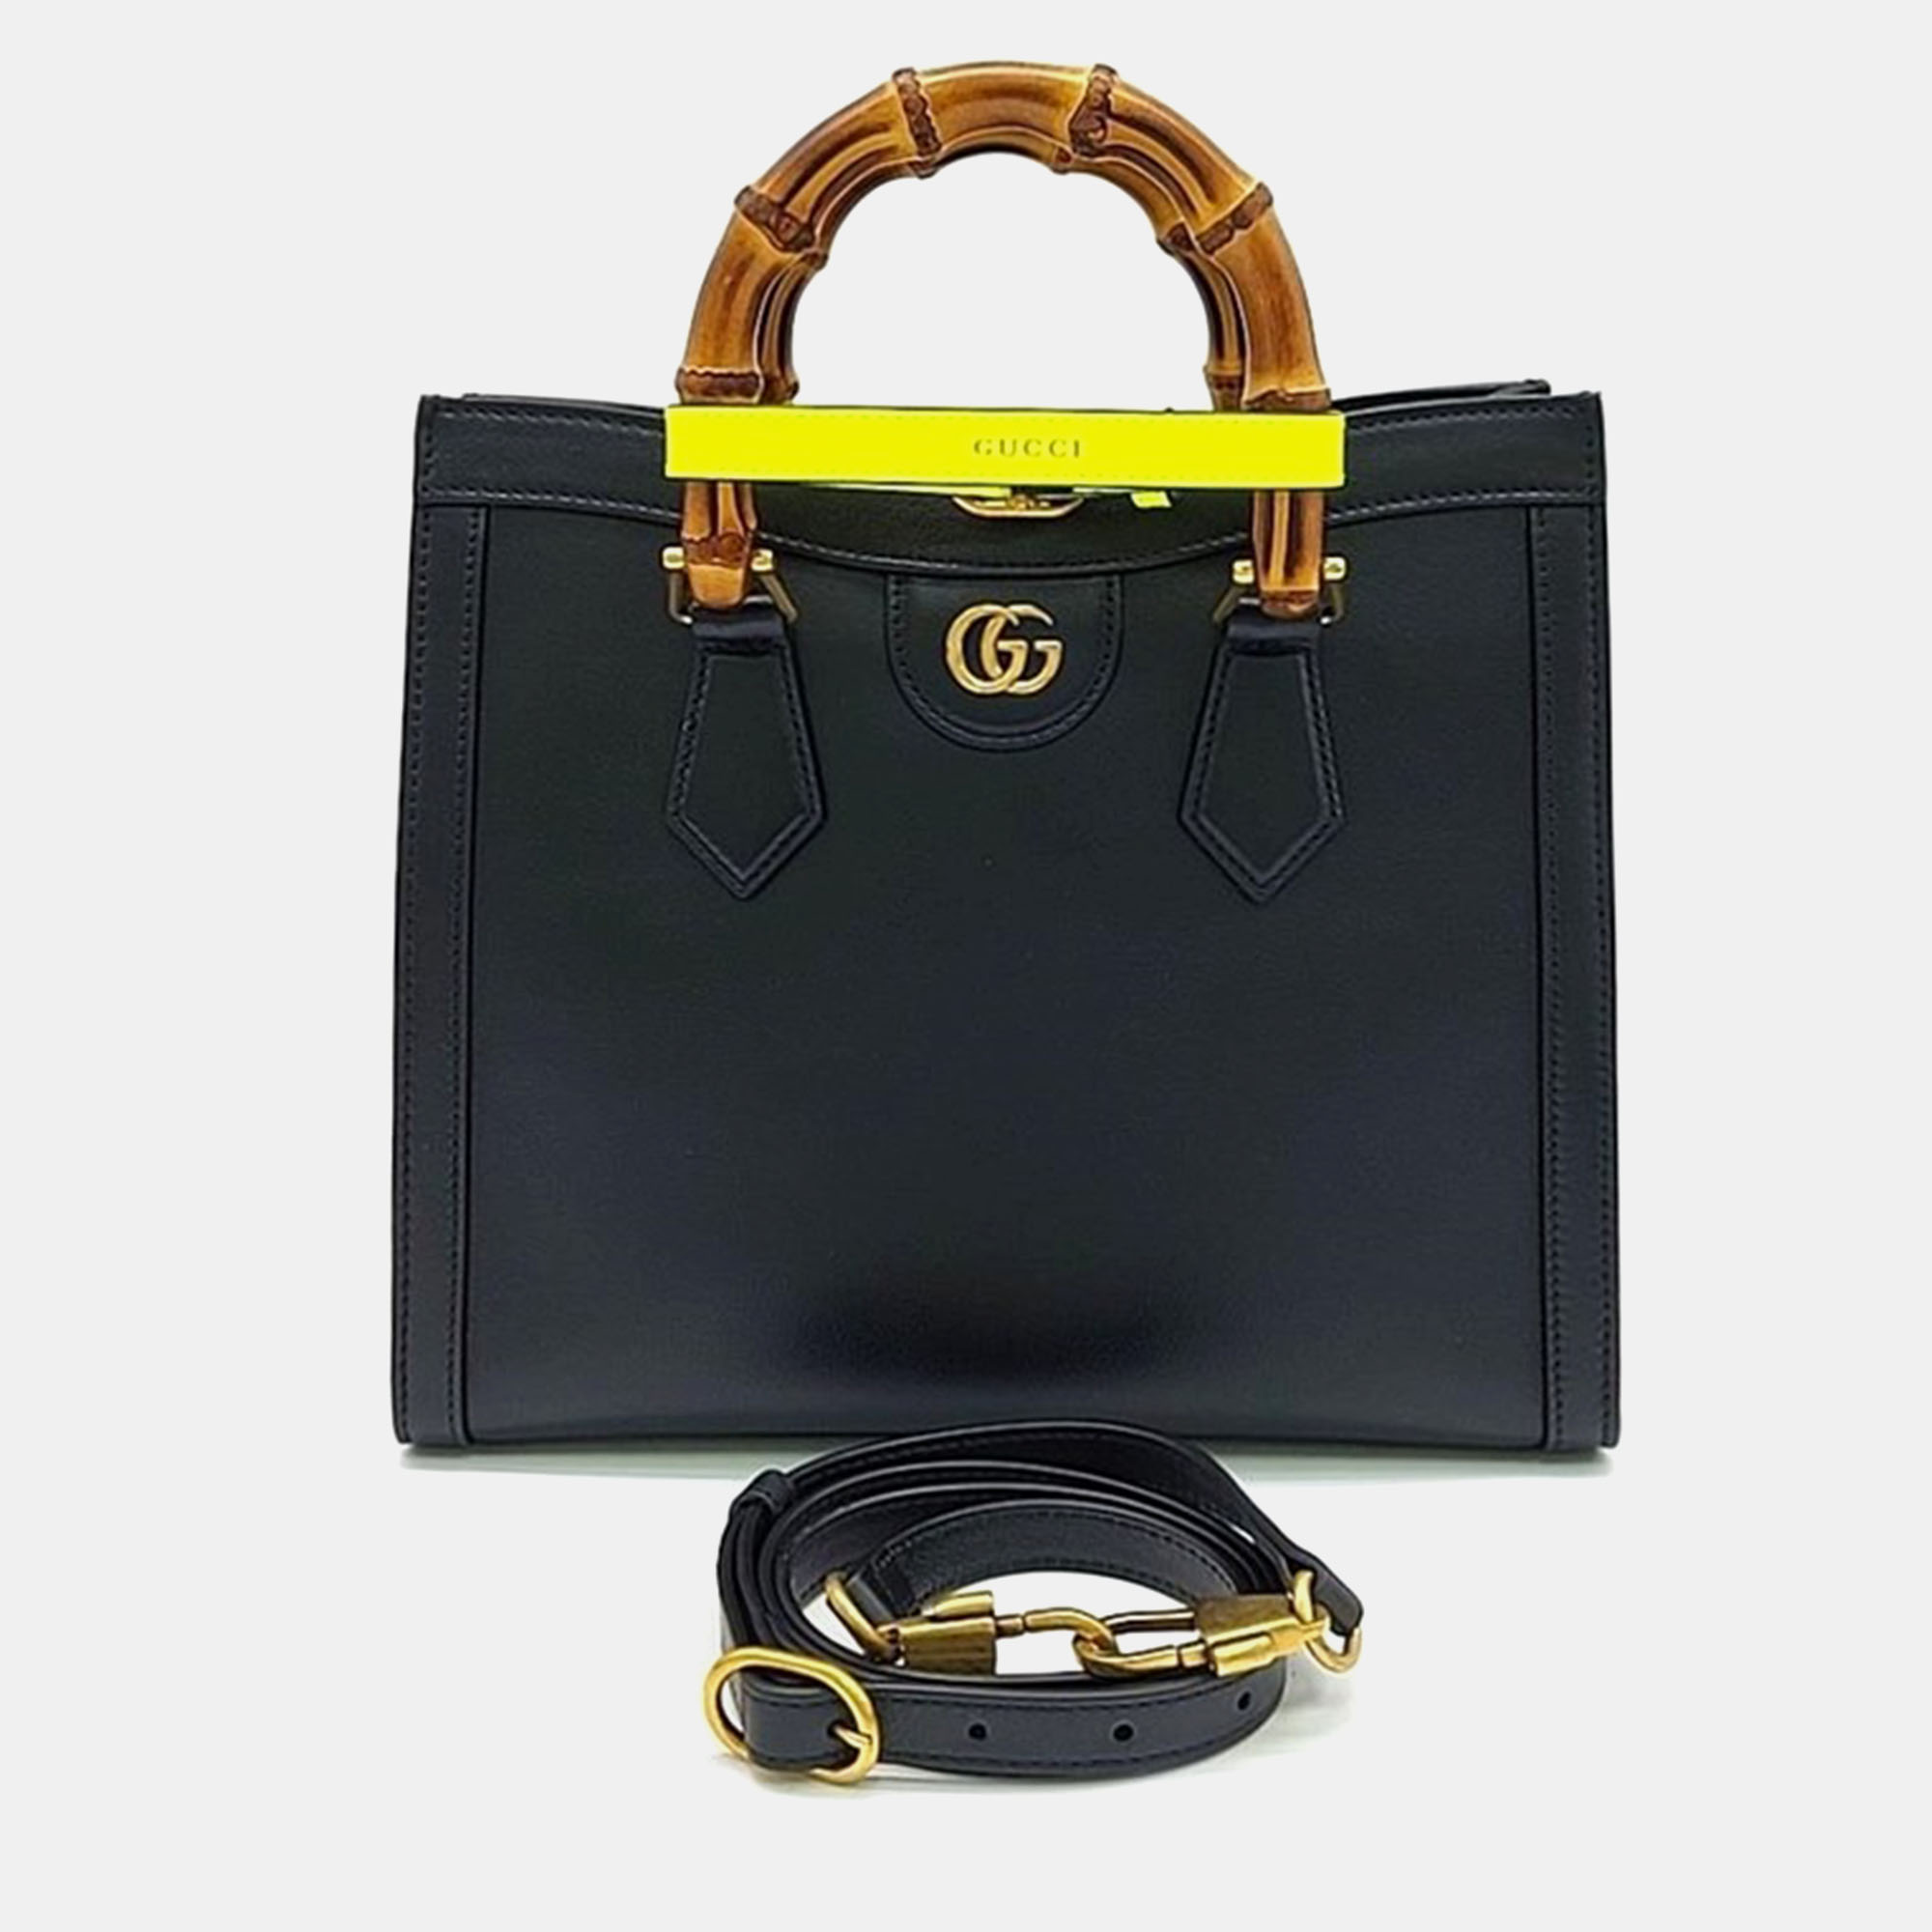 

Gucci Diana Bamboo Small Tote Bag, Black